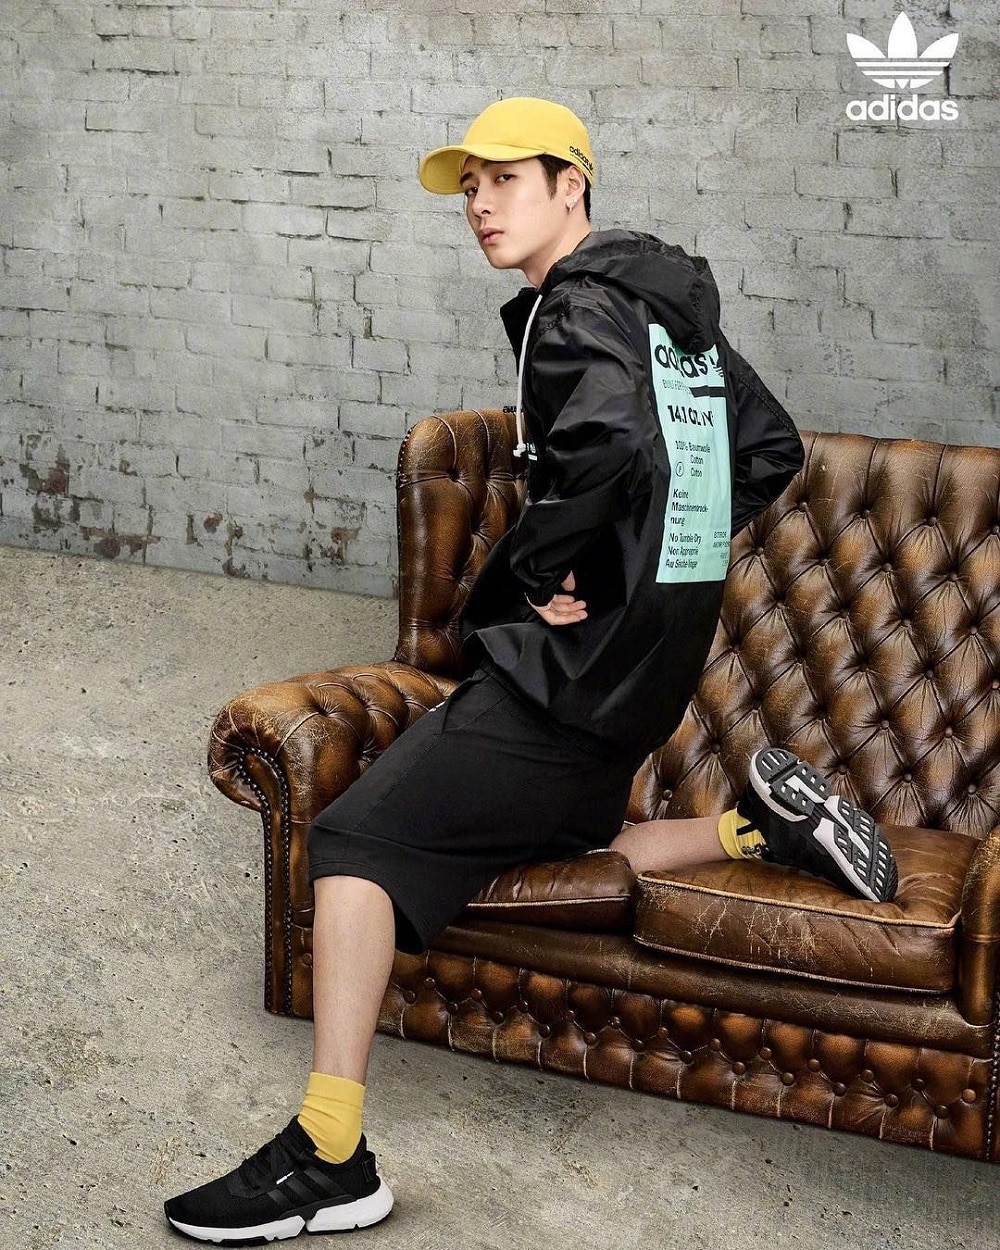 Jackson trở thành người đại diện cho nhãn hàng Adidas